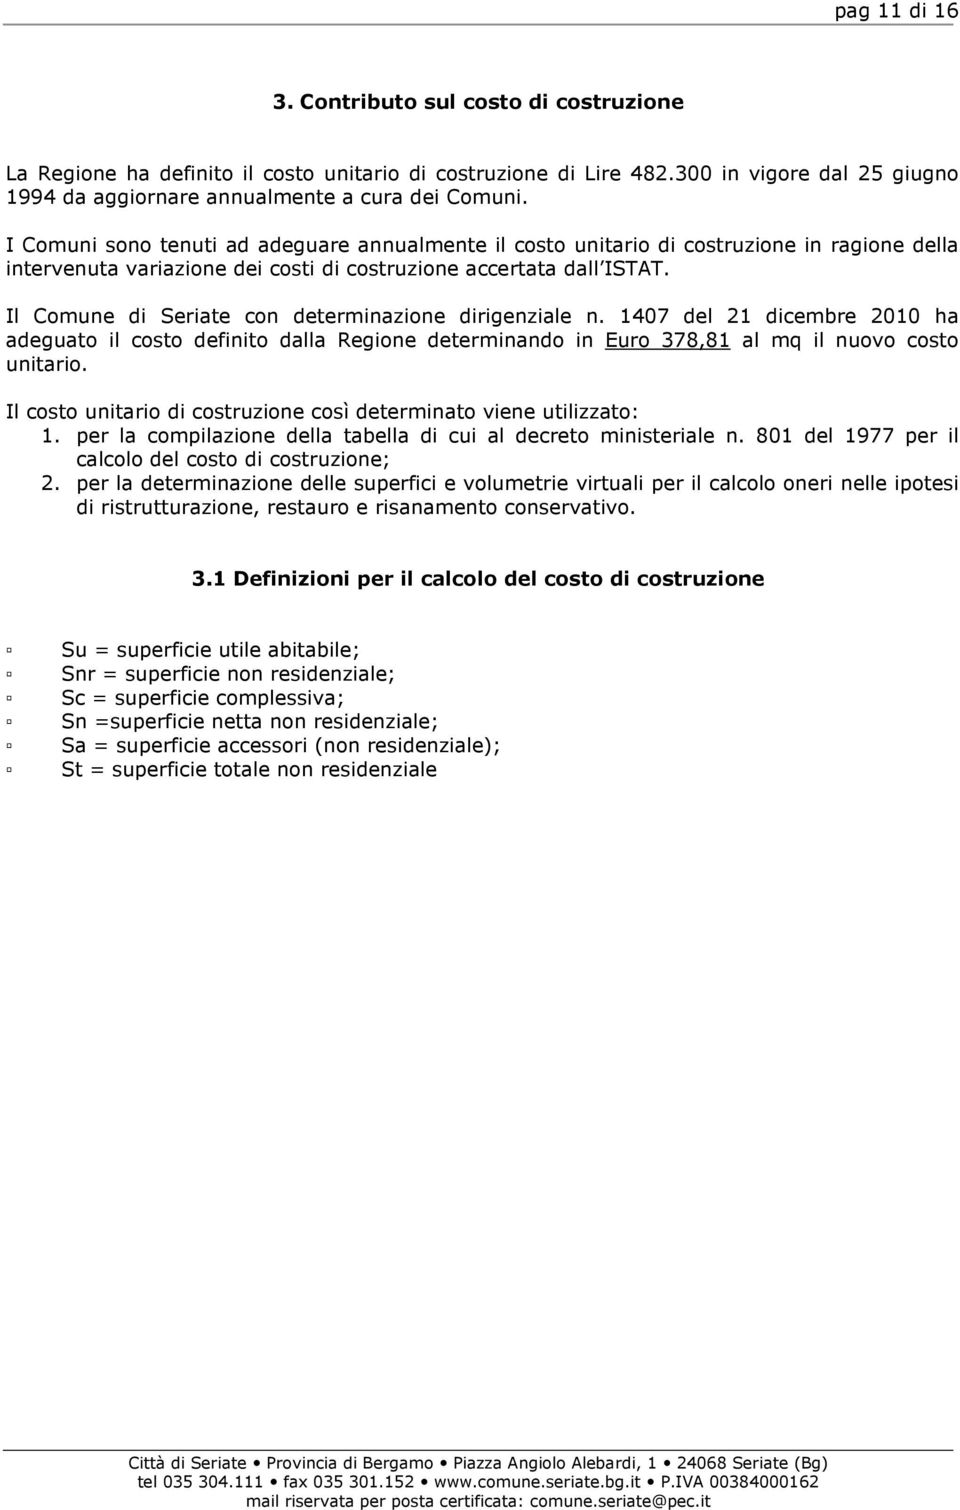 Il Comune di Seriate con determinazione dirigenziale n. 1407 del 21 dicembre 2010 ha adeguato il costo definito dalla Regione determinando in Euro 378,81 al mq il nuovo costo unitario.